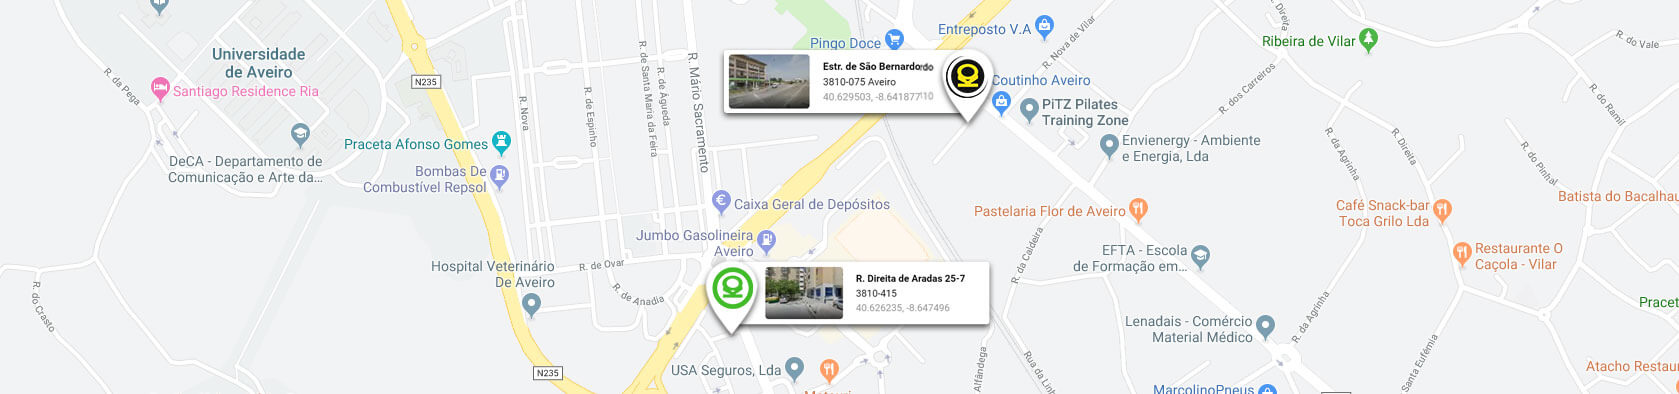 Google maps - localição dos Centros KO